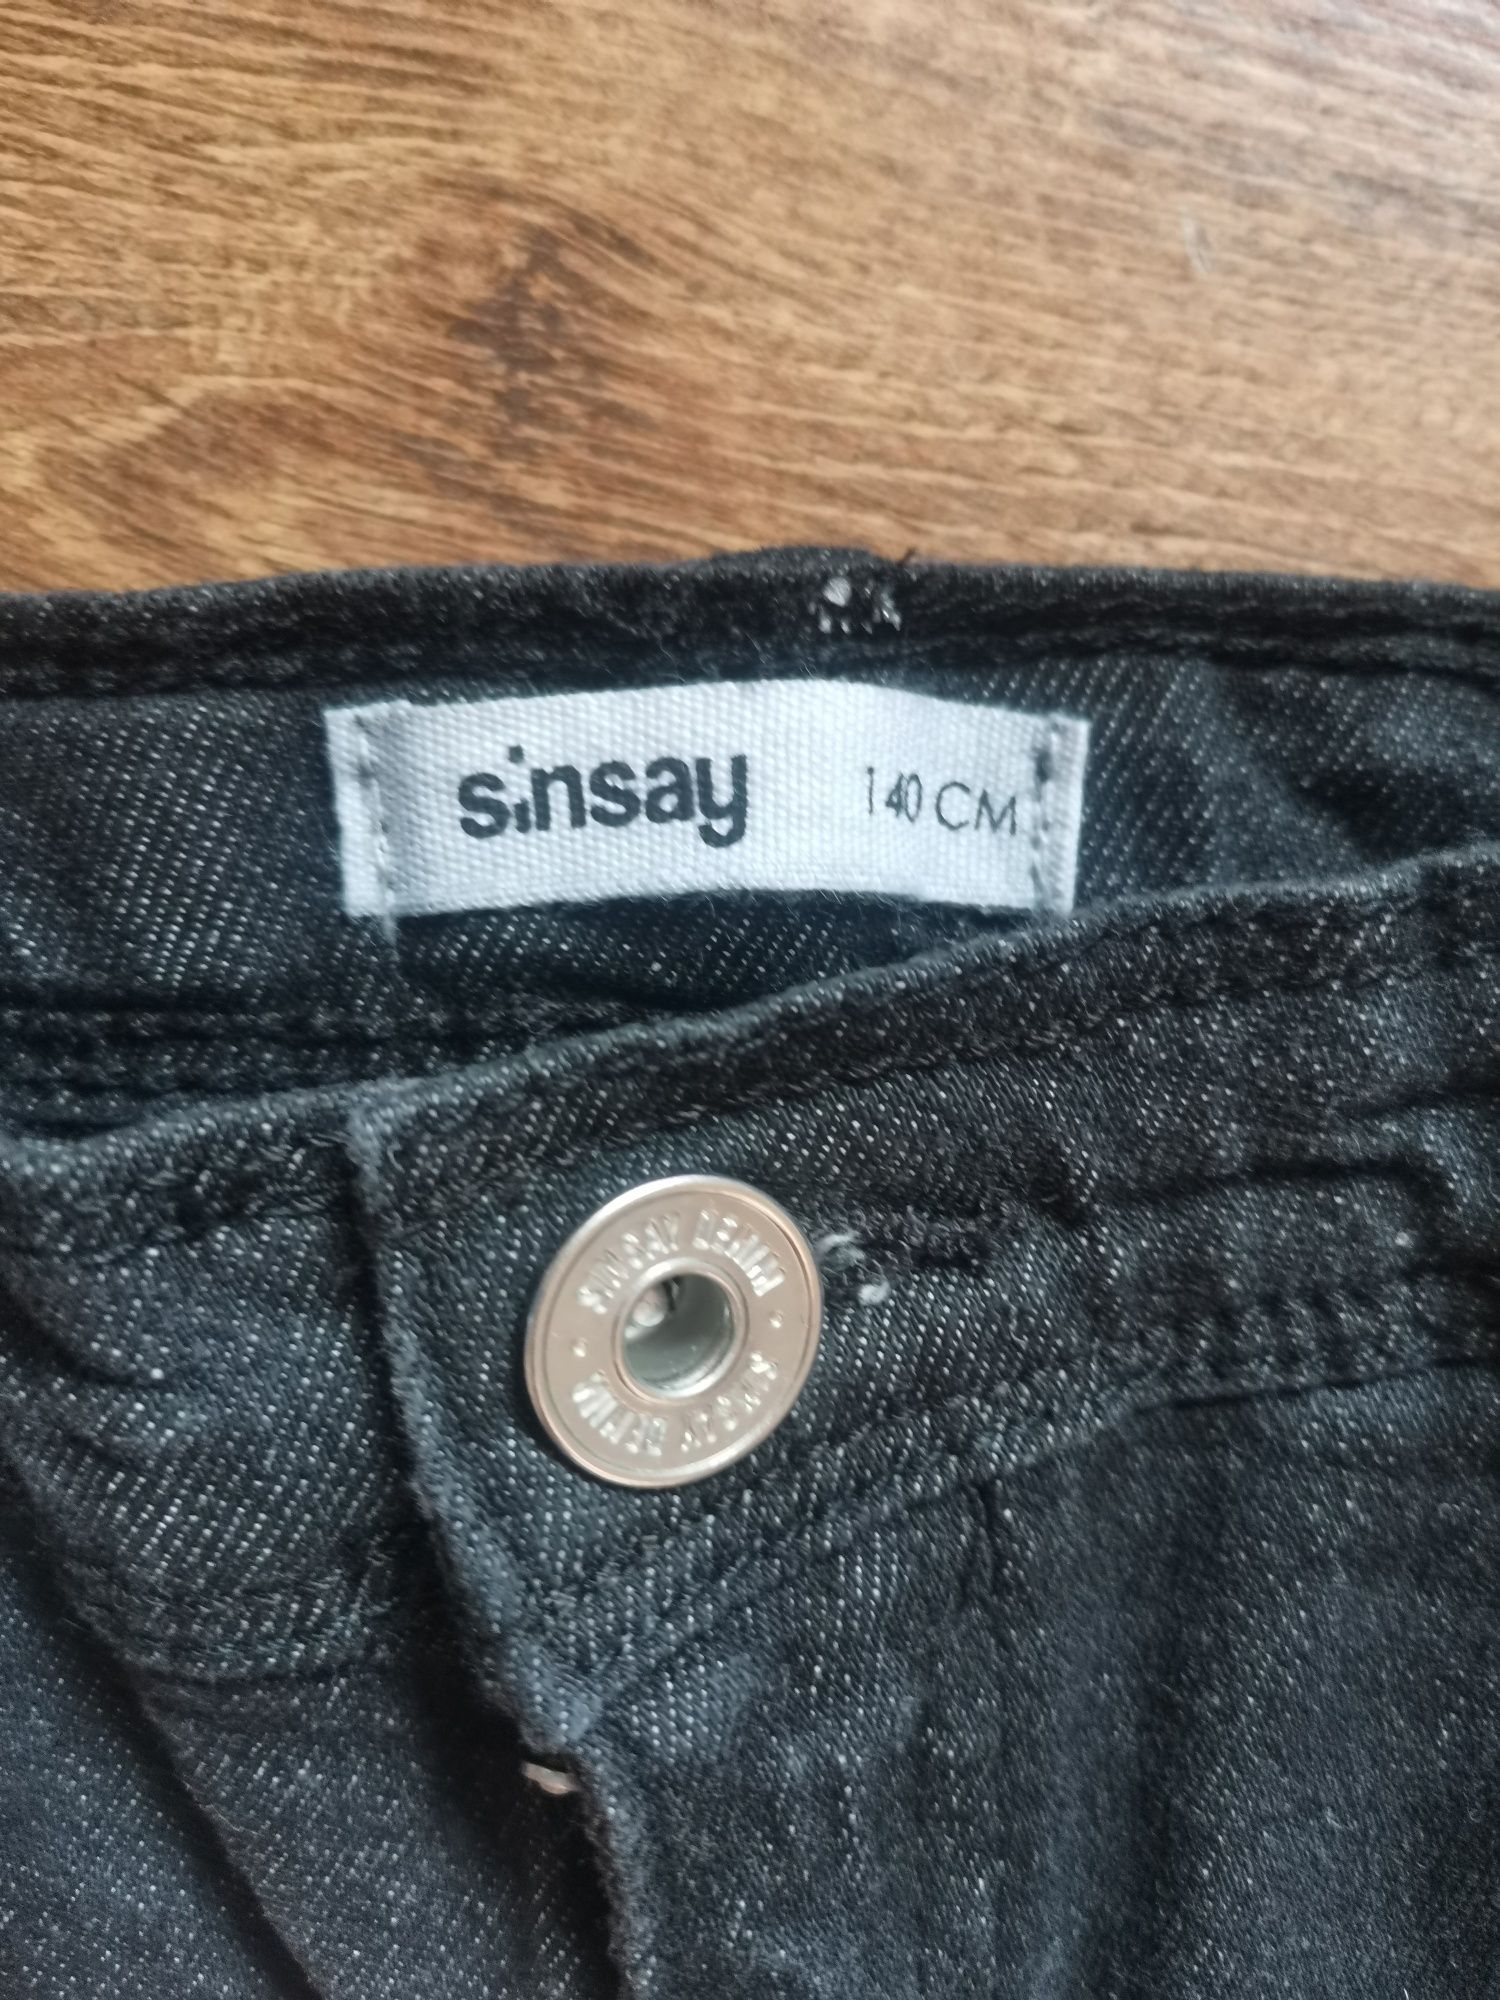 Джинсы бренда Sinsay 140 см.